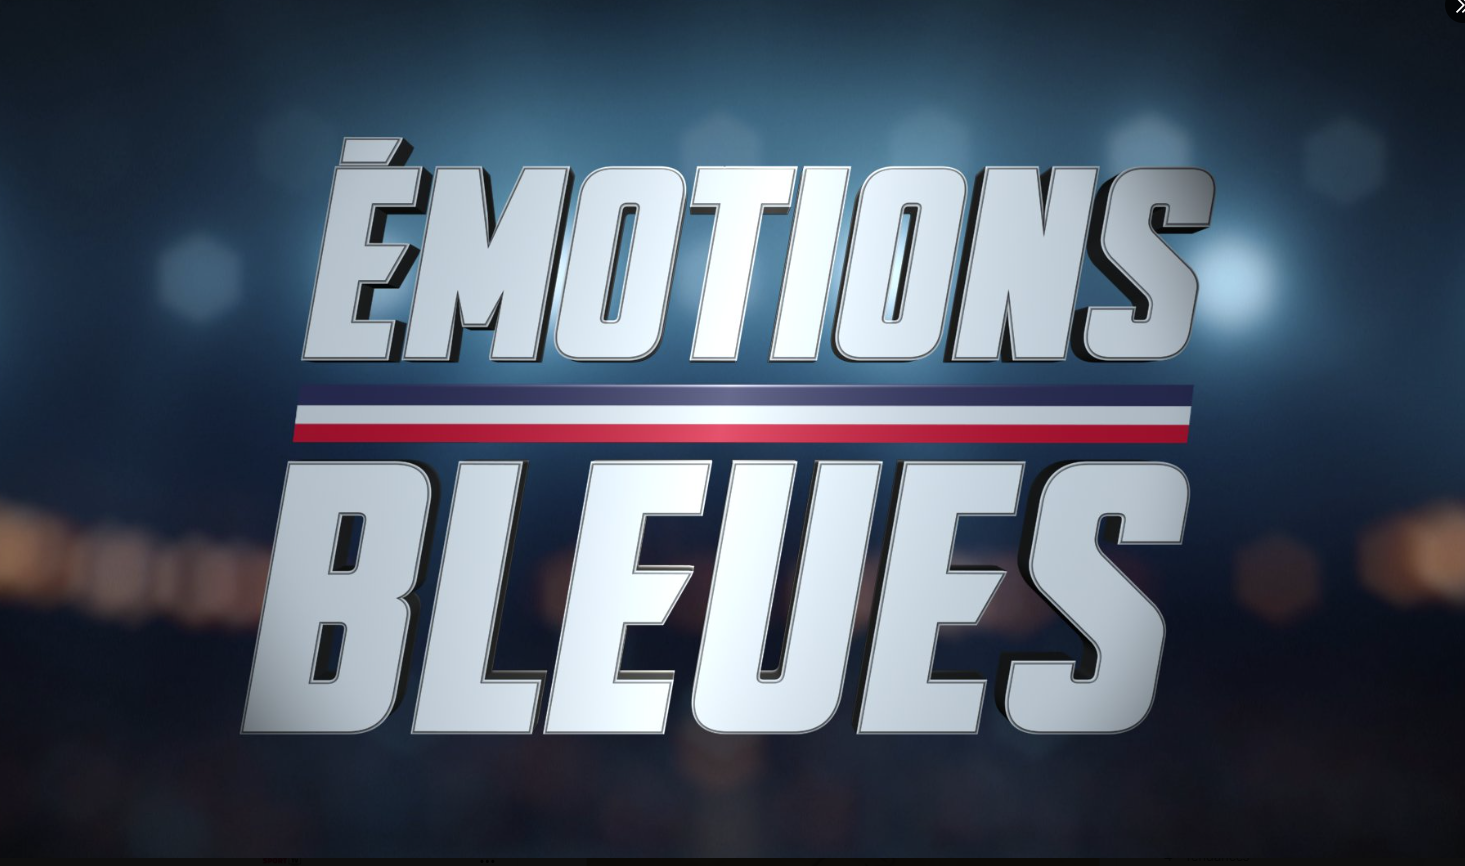 "Emotions bleues" Le récit de l'aventure de l'équipe de France de rugby ce vendredi sur TF1